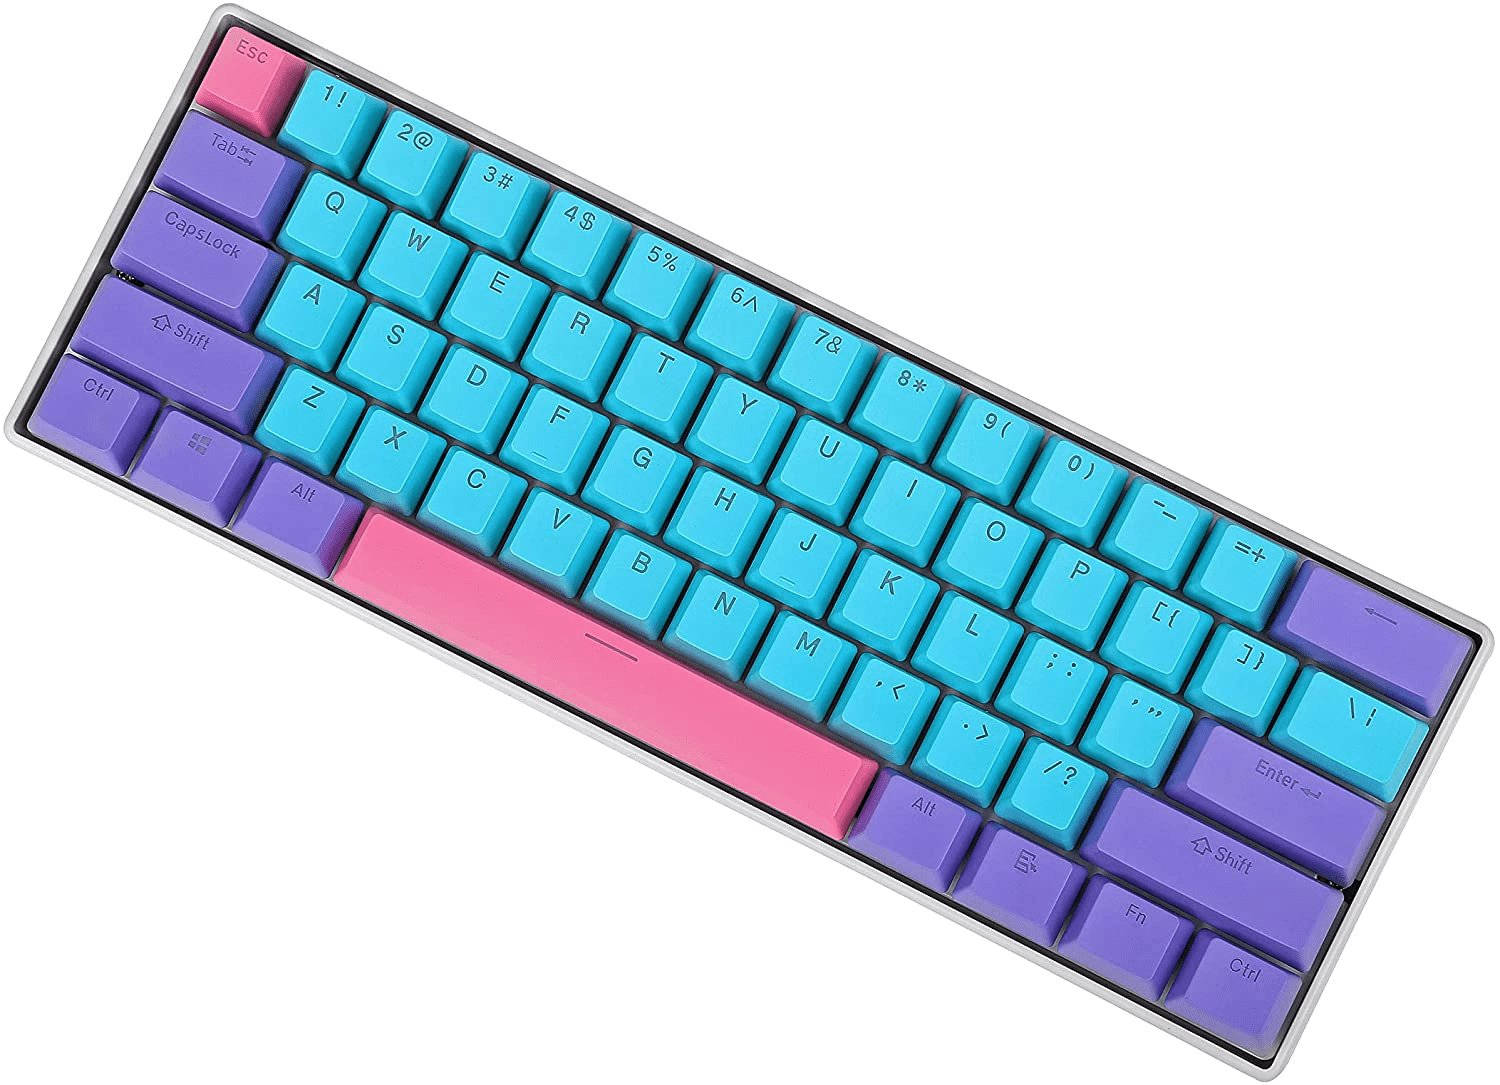 Aesthetic Cyan Purple Keyboard Wallpaper